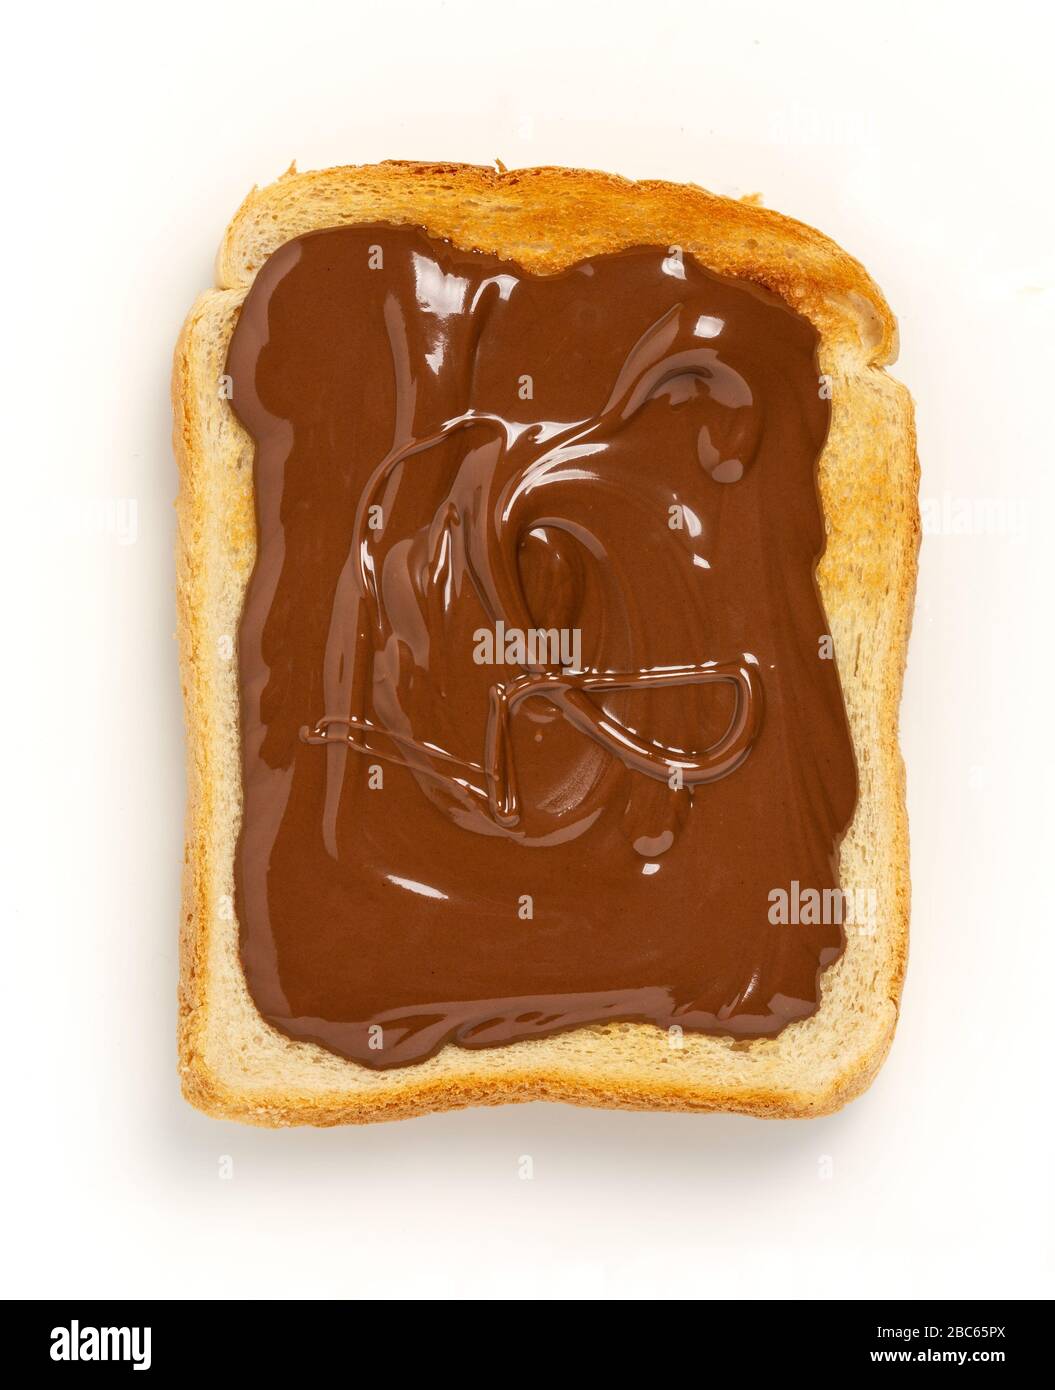 Hazelnut spread on toast Stock Photo